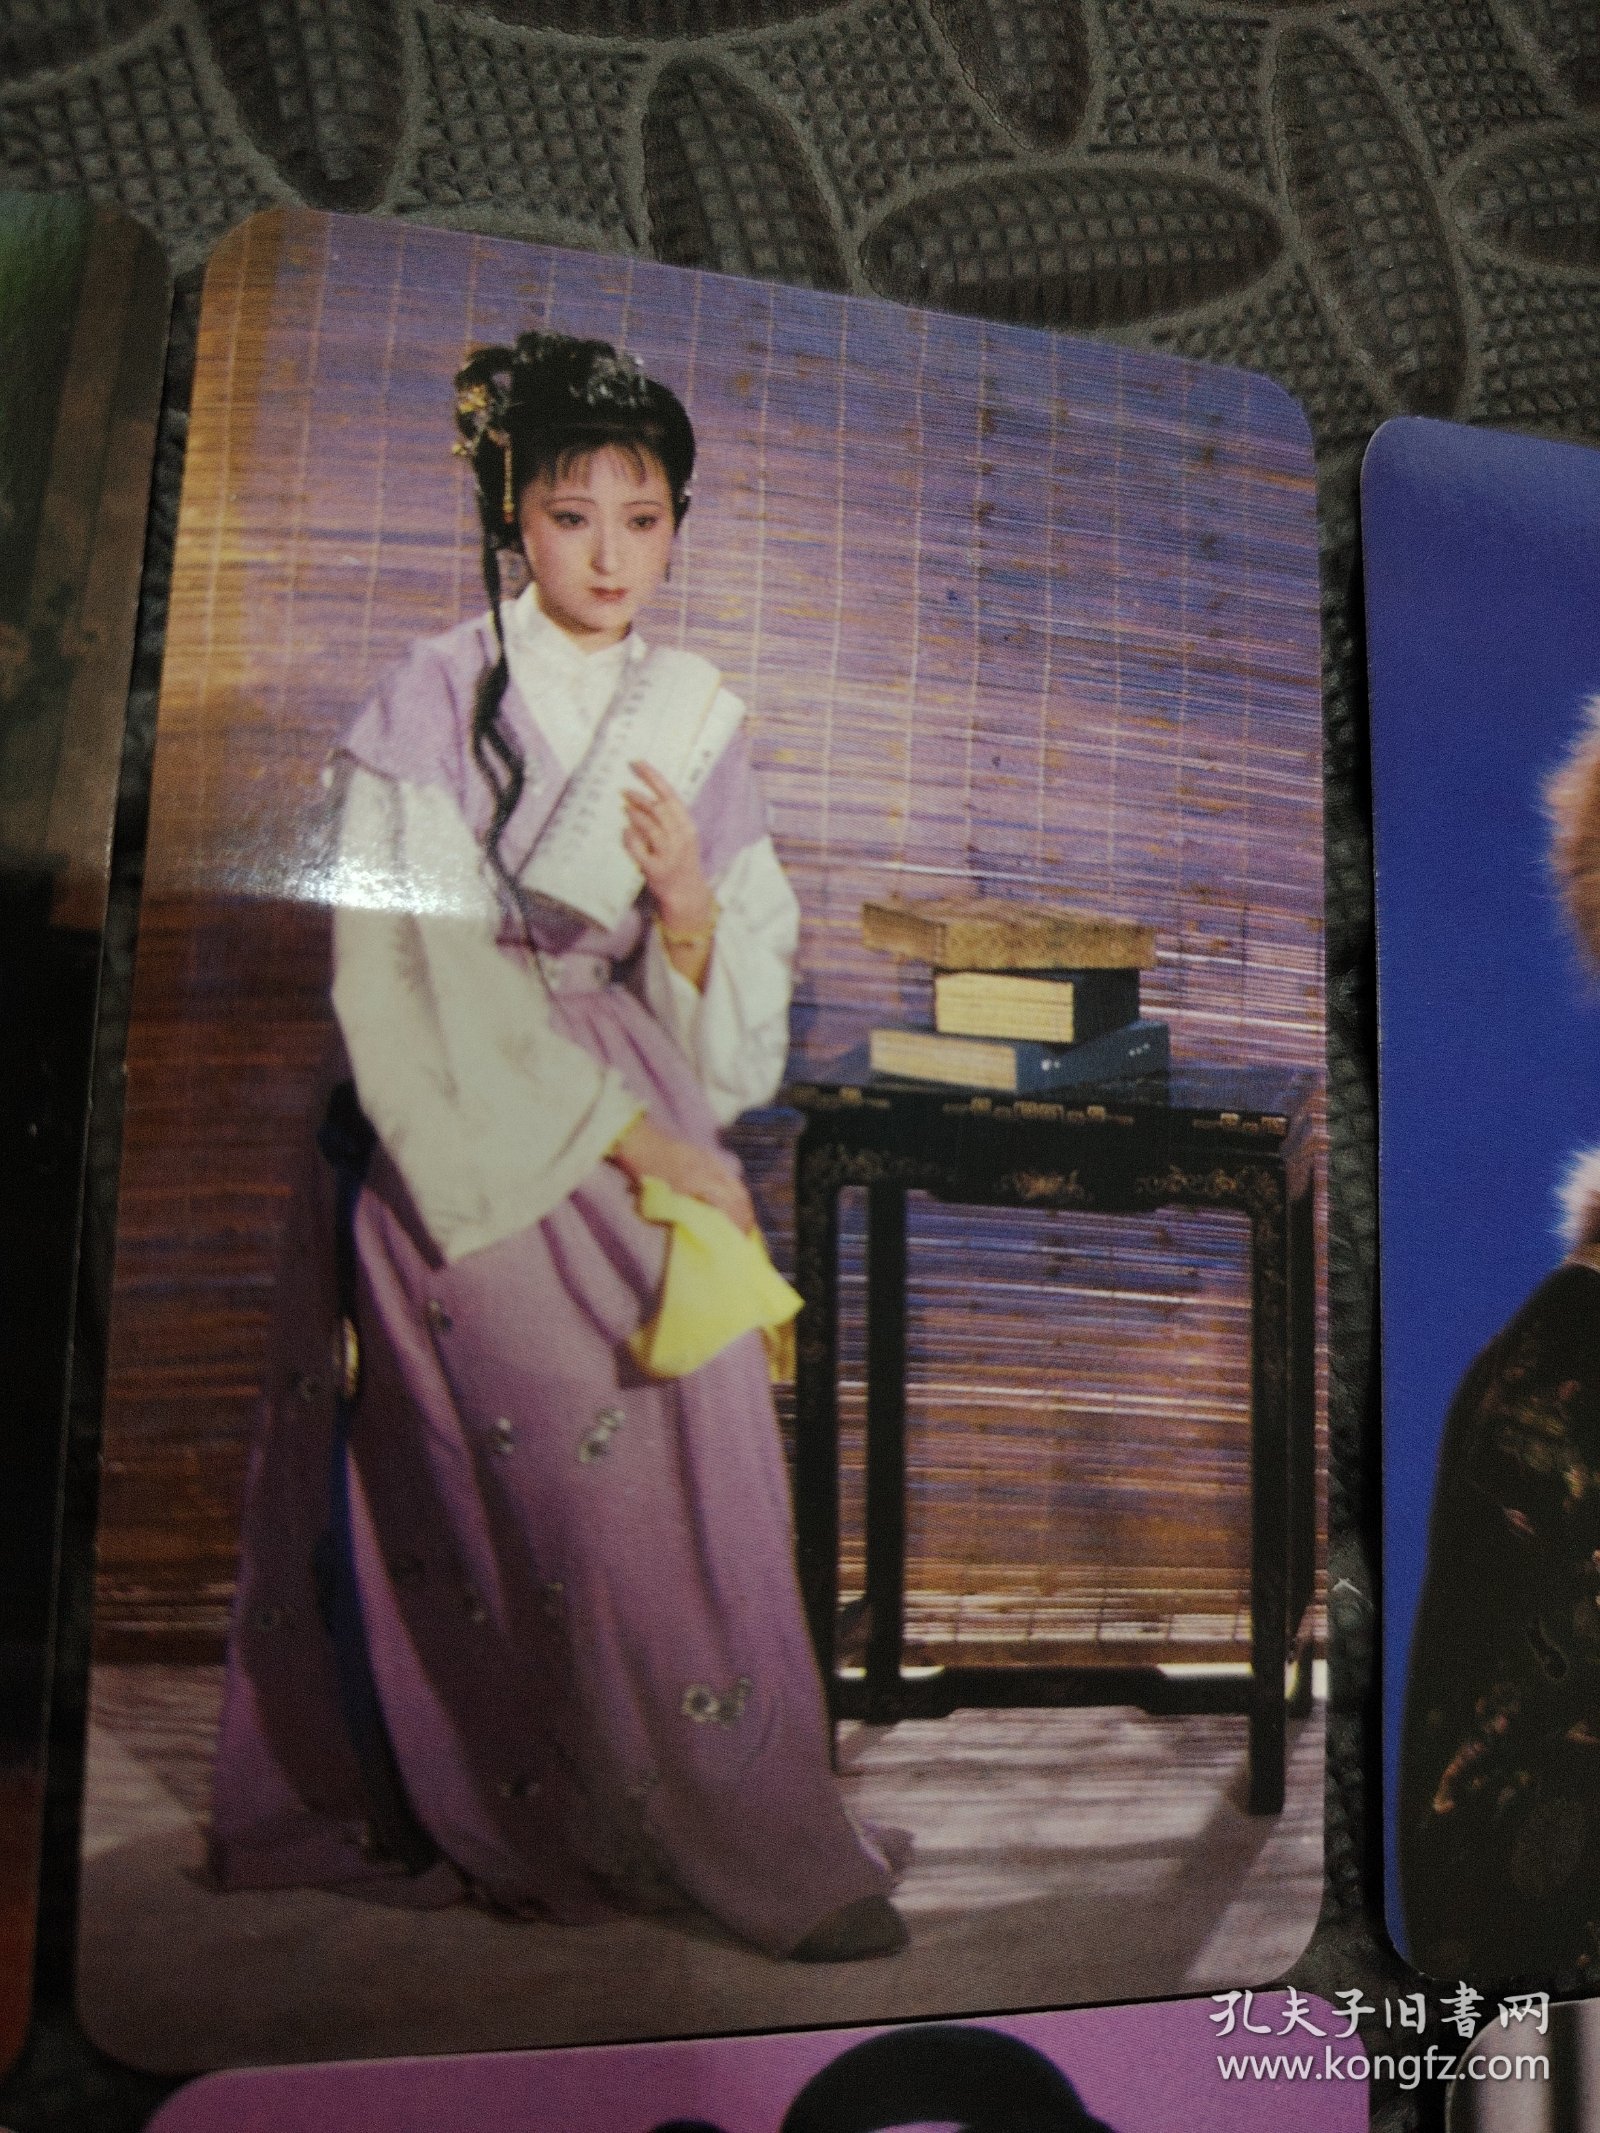 1986年中国旅游出版社《红楼梦》剧照年历卡一套品相全新